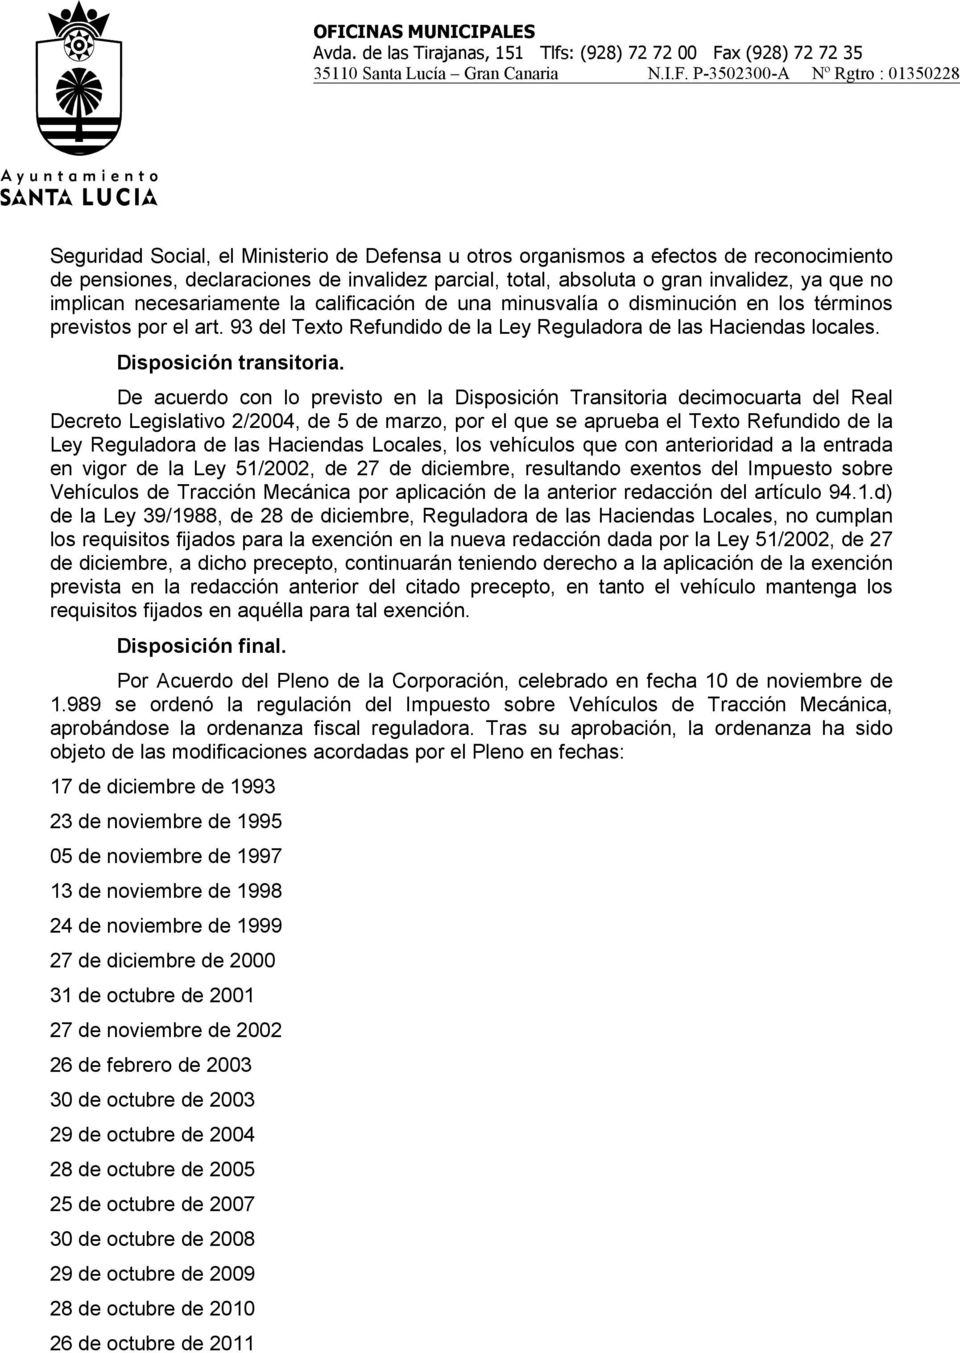 De acuerdo con lo previsto en la Disposición Transitoria decimocuarta del Real Decreto Legislativo 2/2004, de 5 de marzo, por el que se aprueba el Texto Refundido de la Ley Reguladora de las